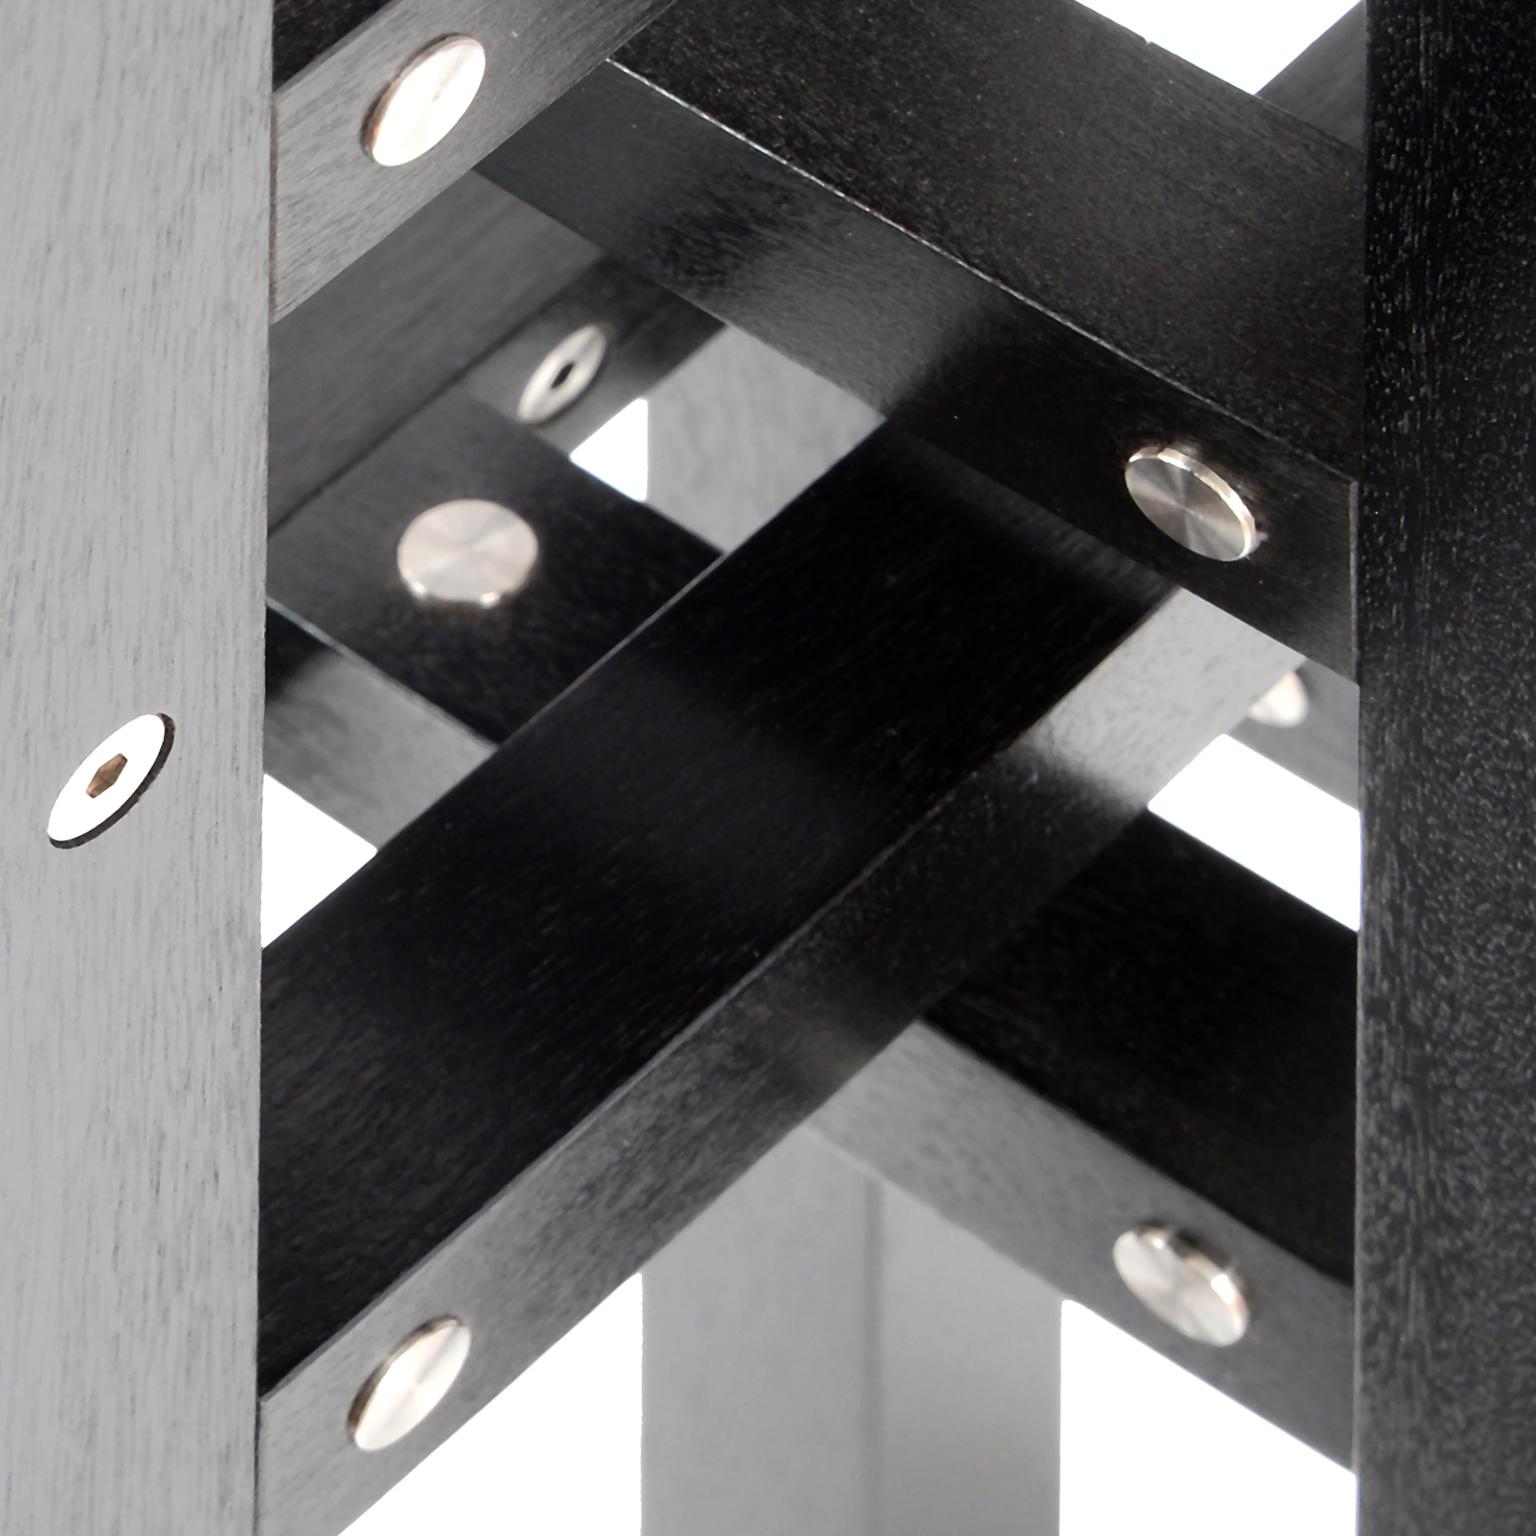 Dyed Kalyke 'In Stock' Modern Industrial Pedestal Table Metal & Geometric Black Wood